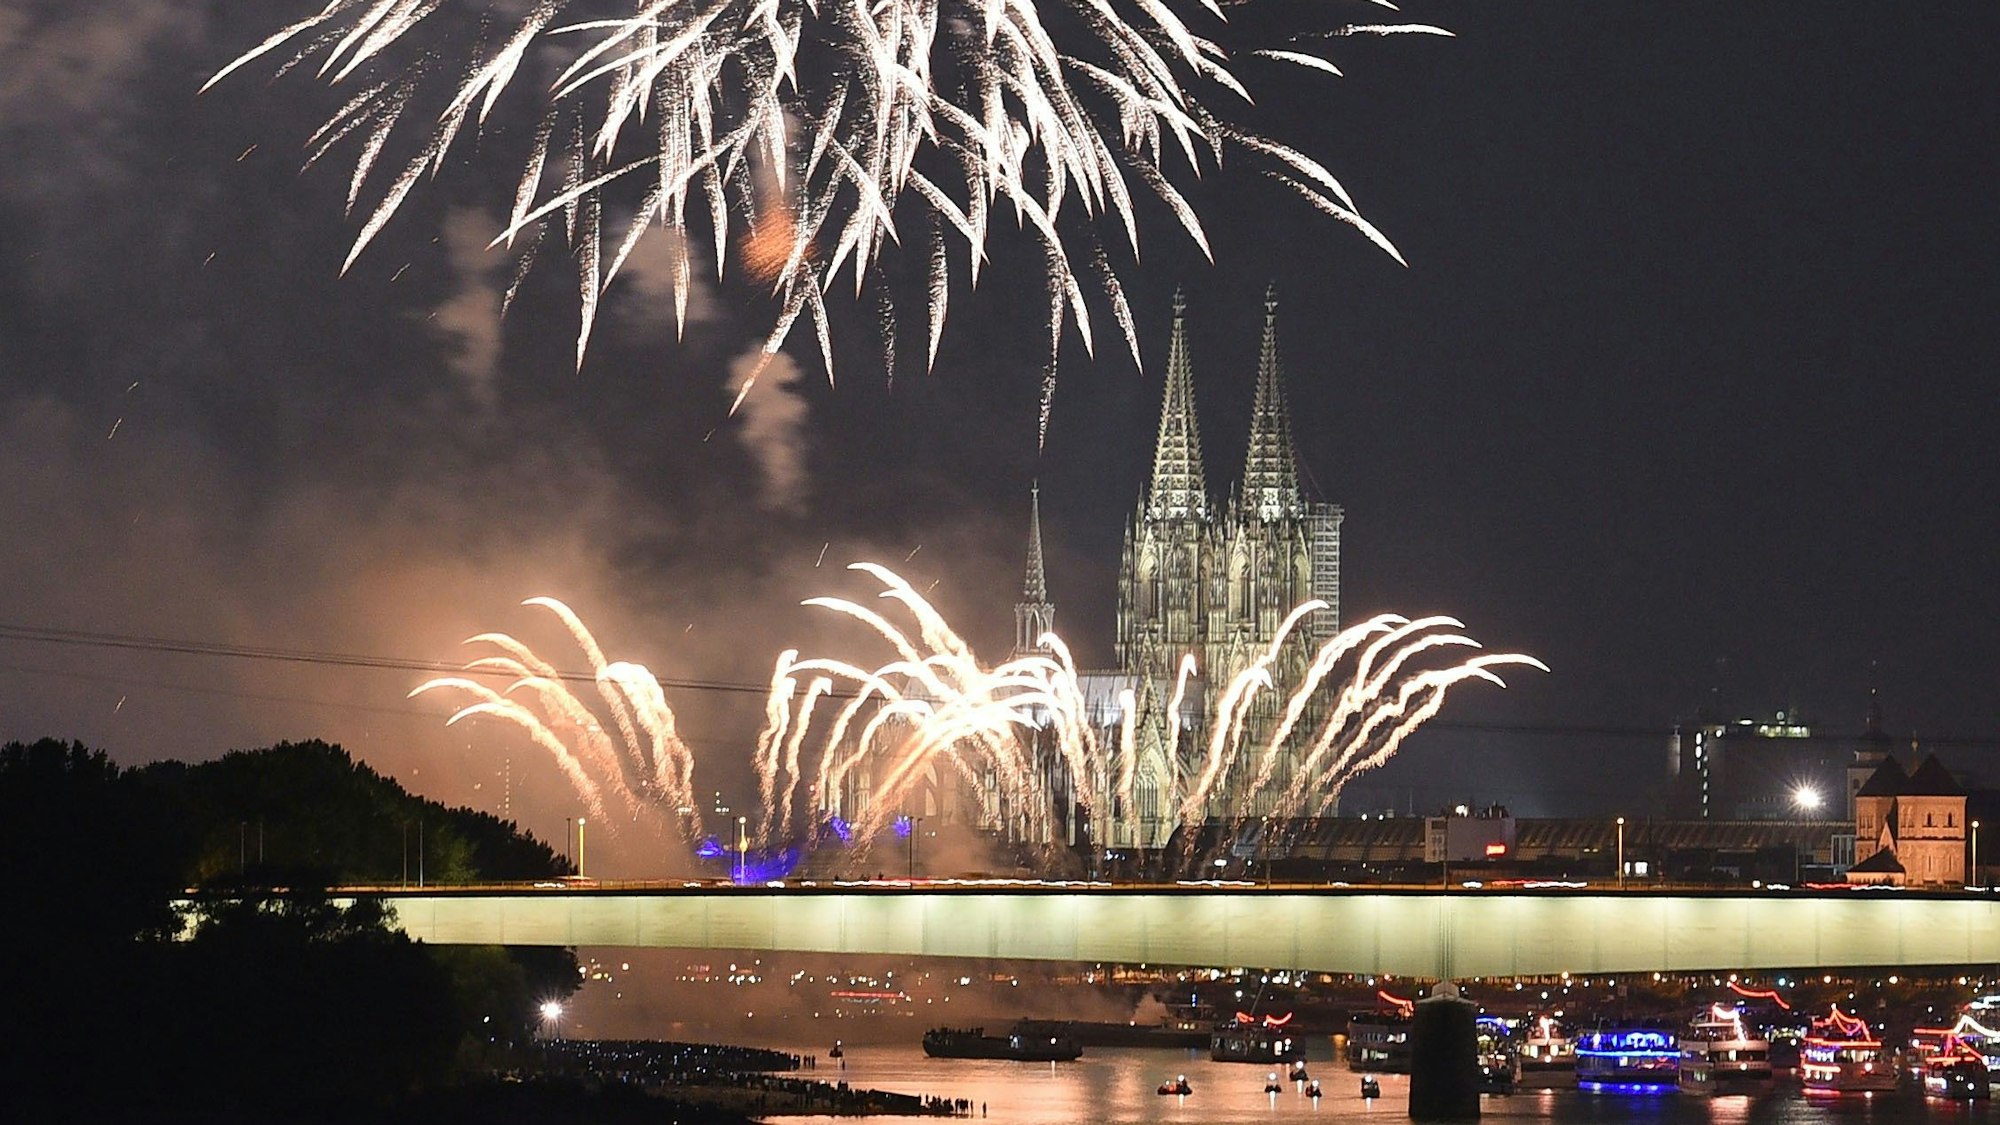 Feuerwerkskörper erhellen beim Feuerwerksspektakel Kölner Lichter den Himmel über dem Rhein.